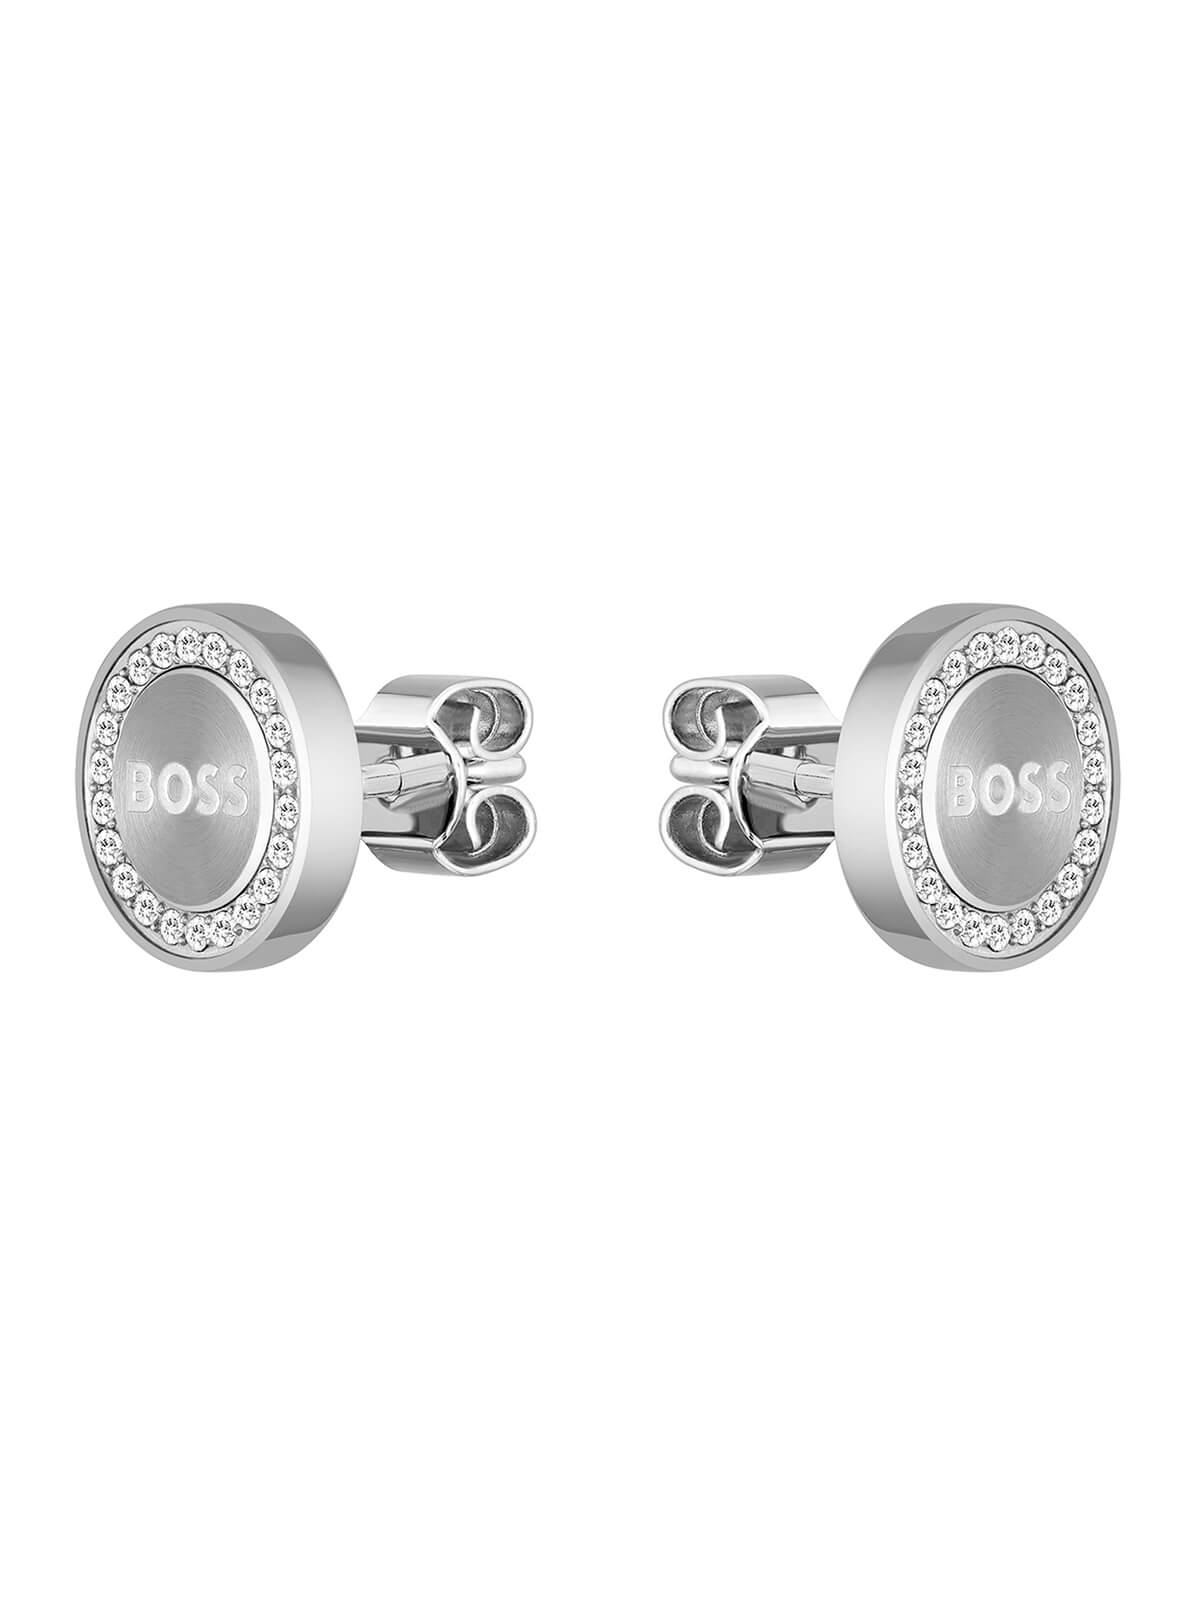 BOSS Iona Crystal Stud Earrings in Stainless Steel 1580558